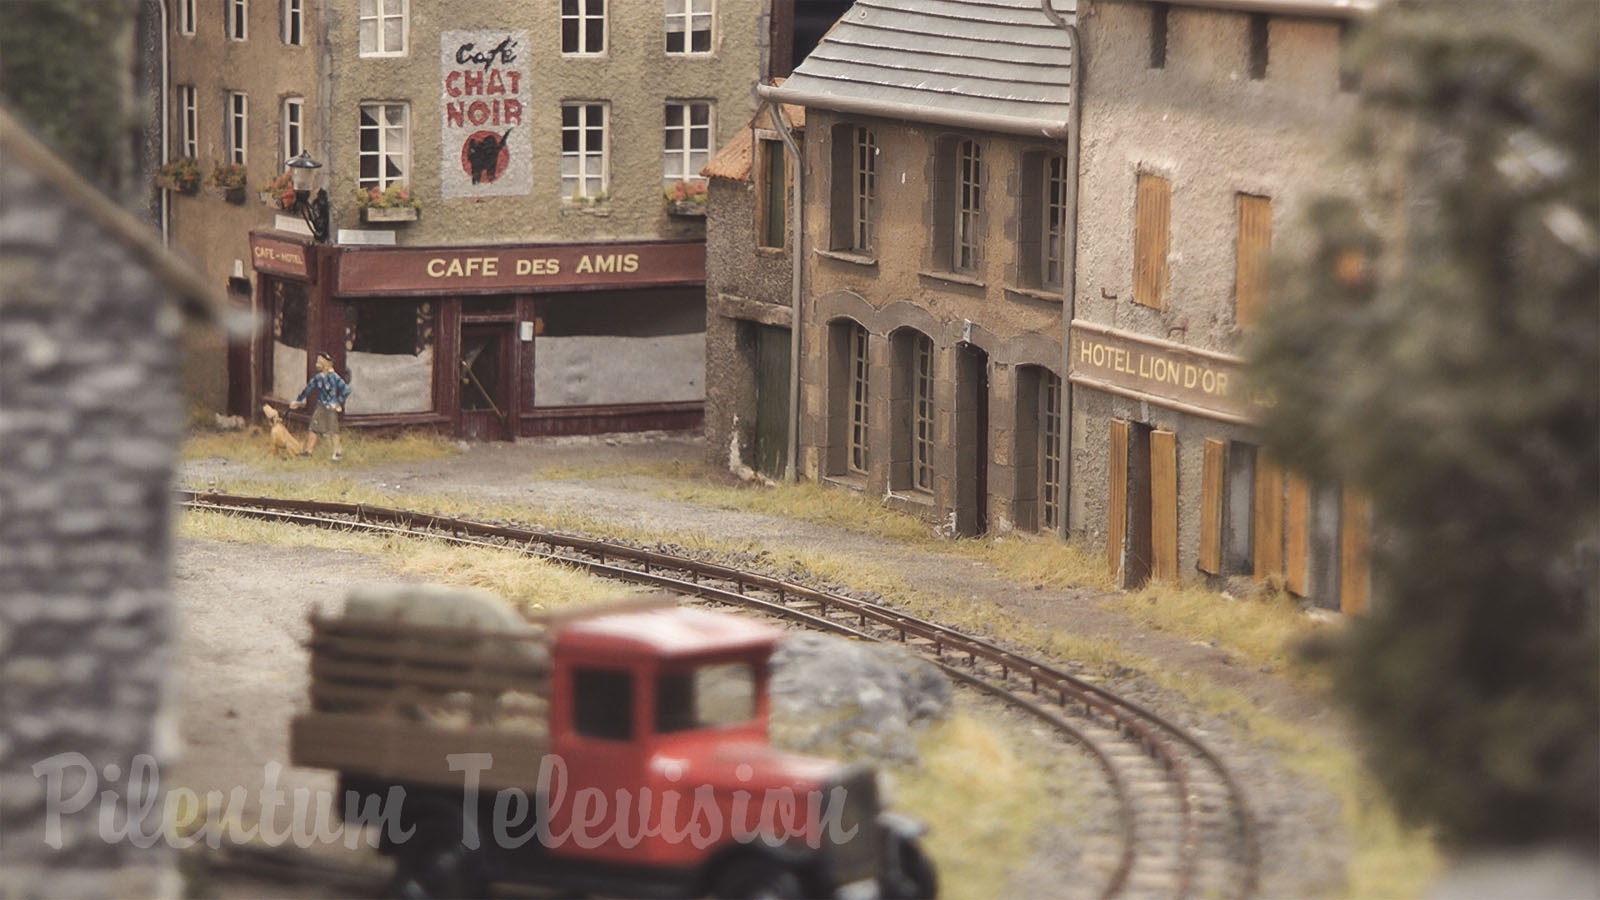 Modélisme ferroviaire - Village où tout le monde aimerait vivre grâce à la locomotive à vapeur